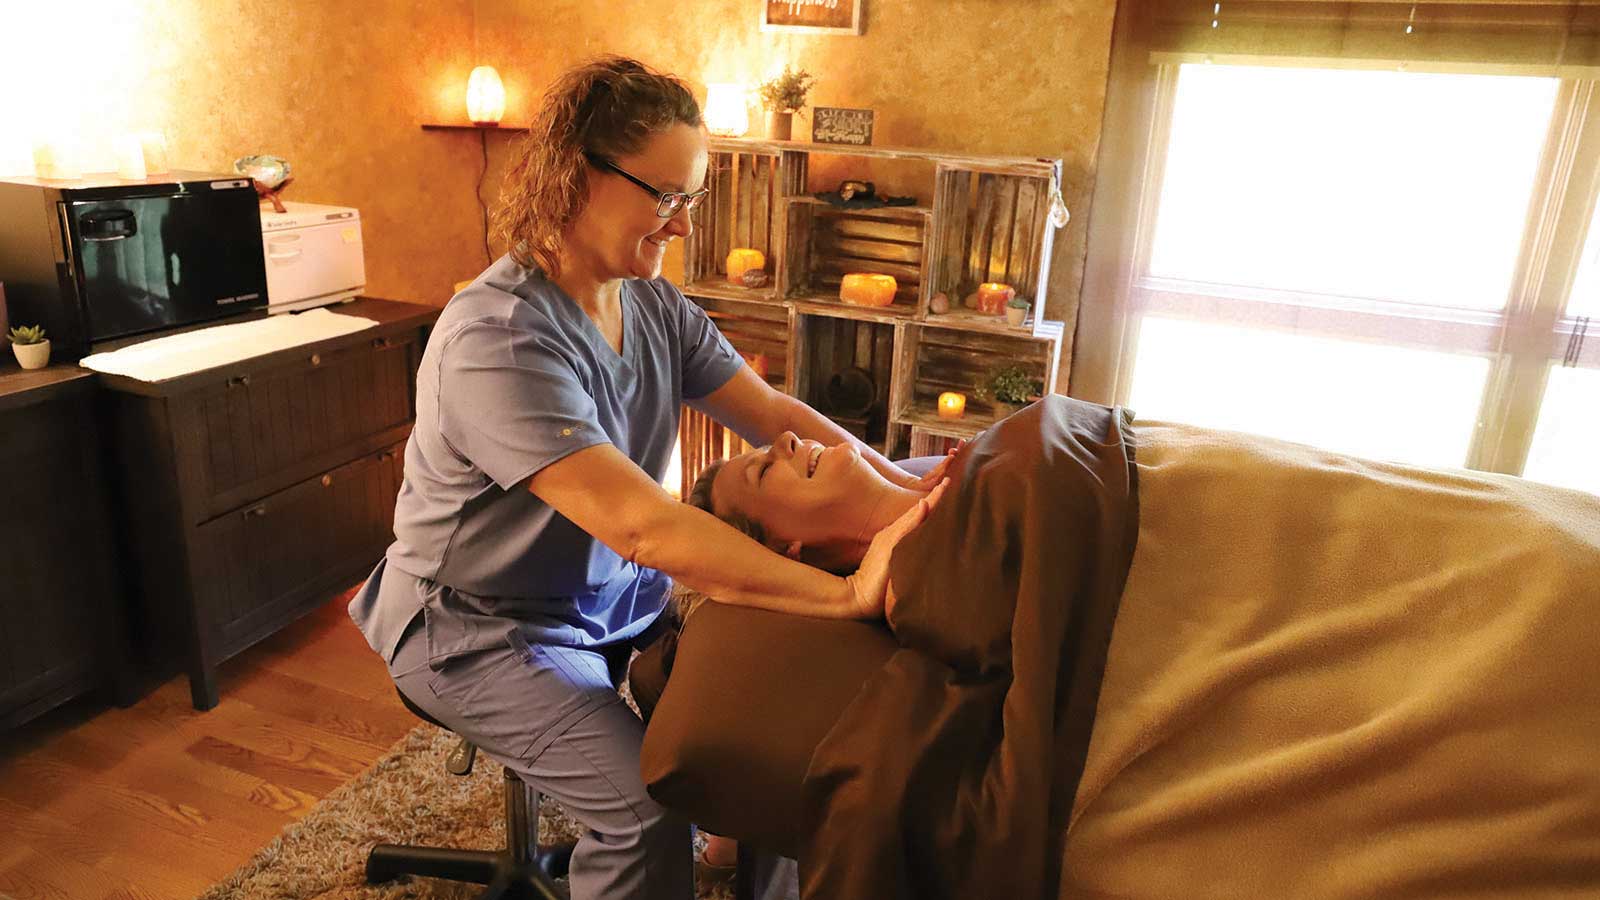 Woman receiving a massage